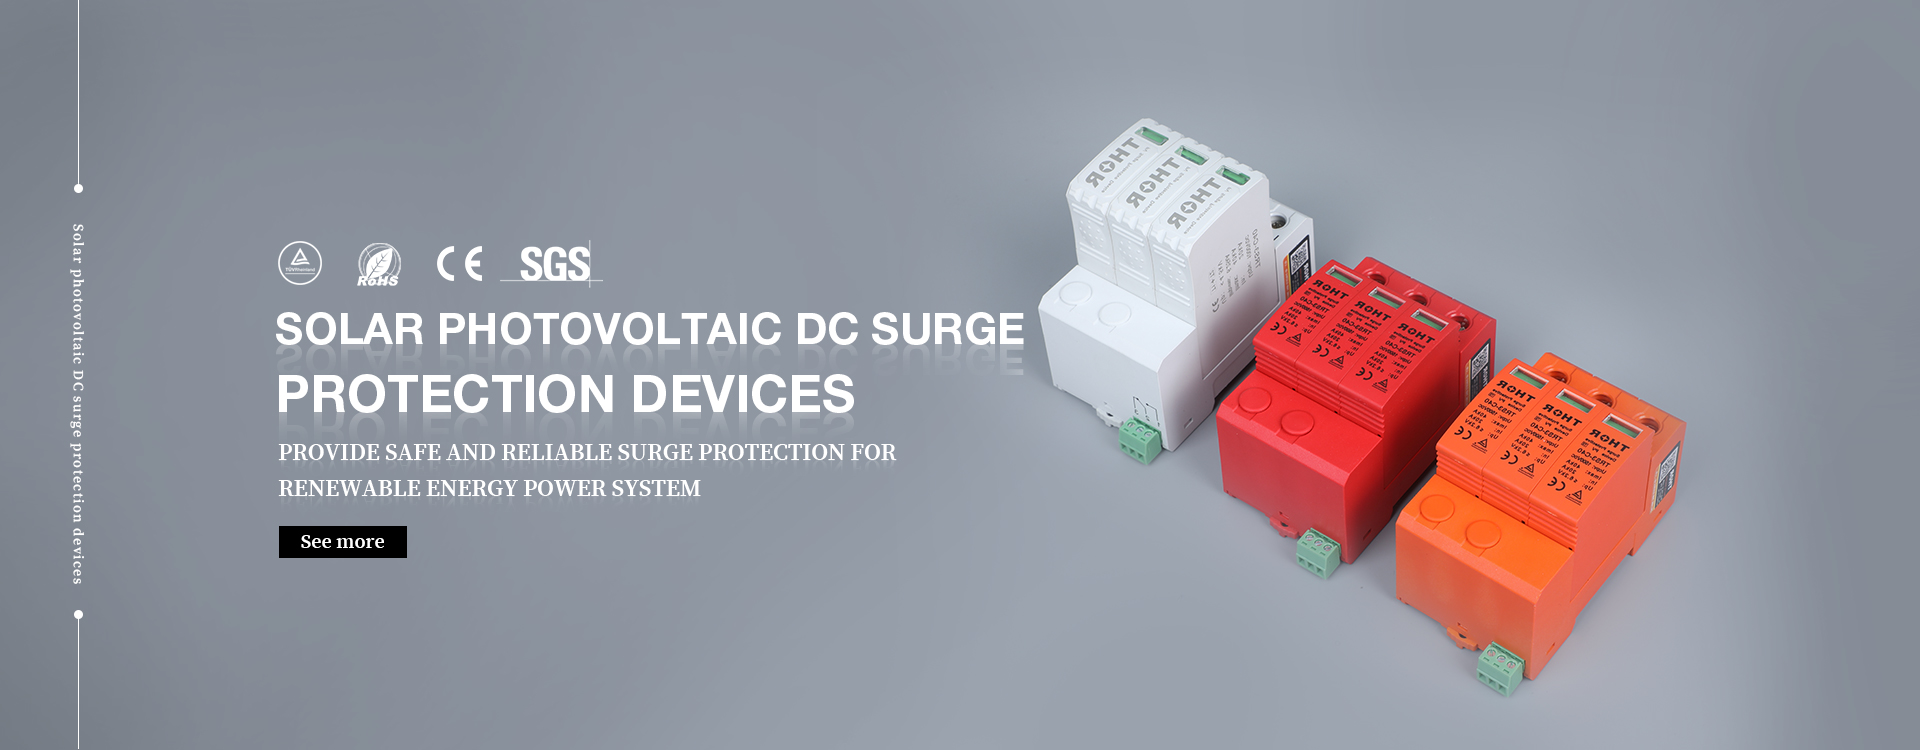 دستگاه حفاظت DC Surge Protection